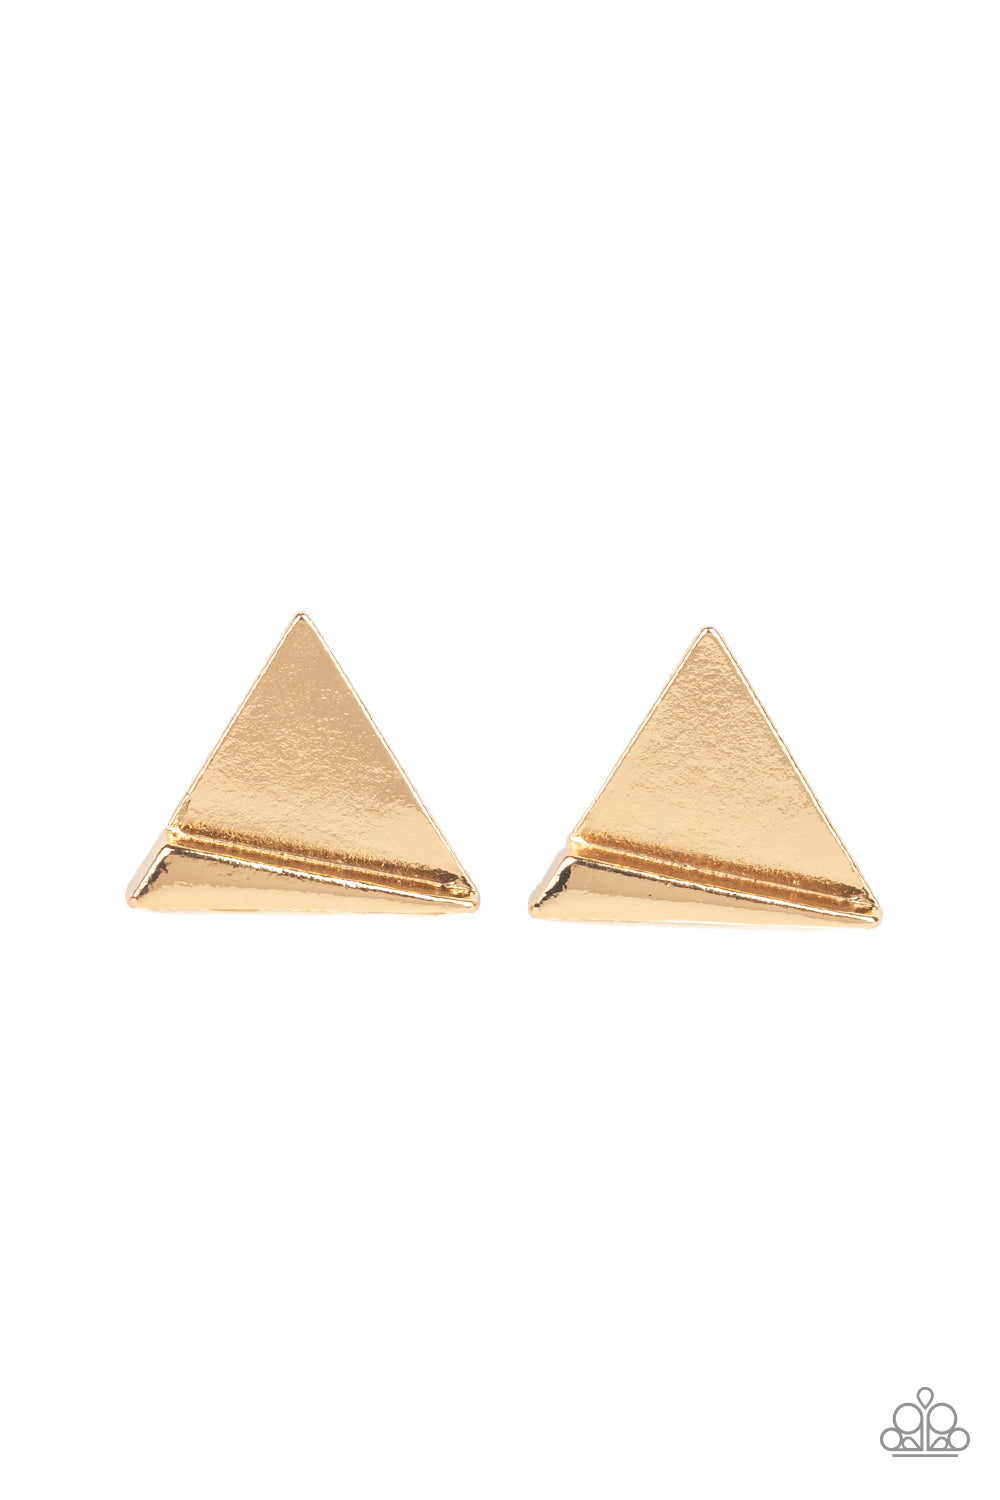 Die TRI-ing - Gold Earrings